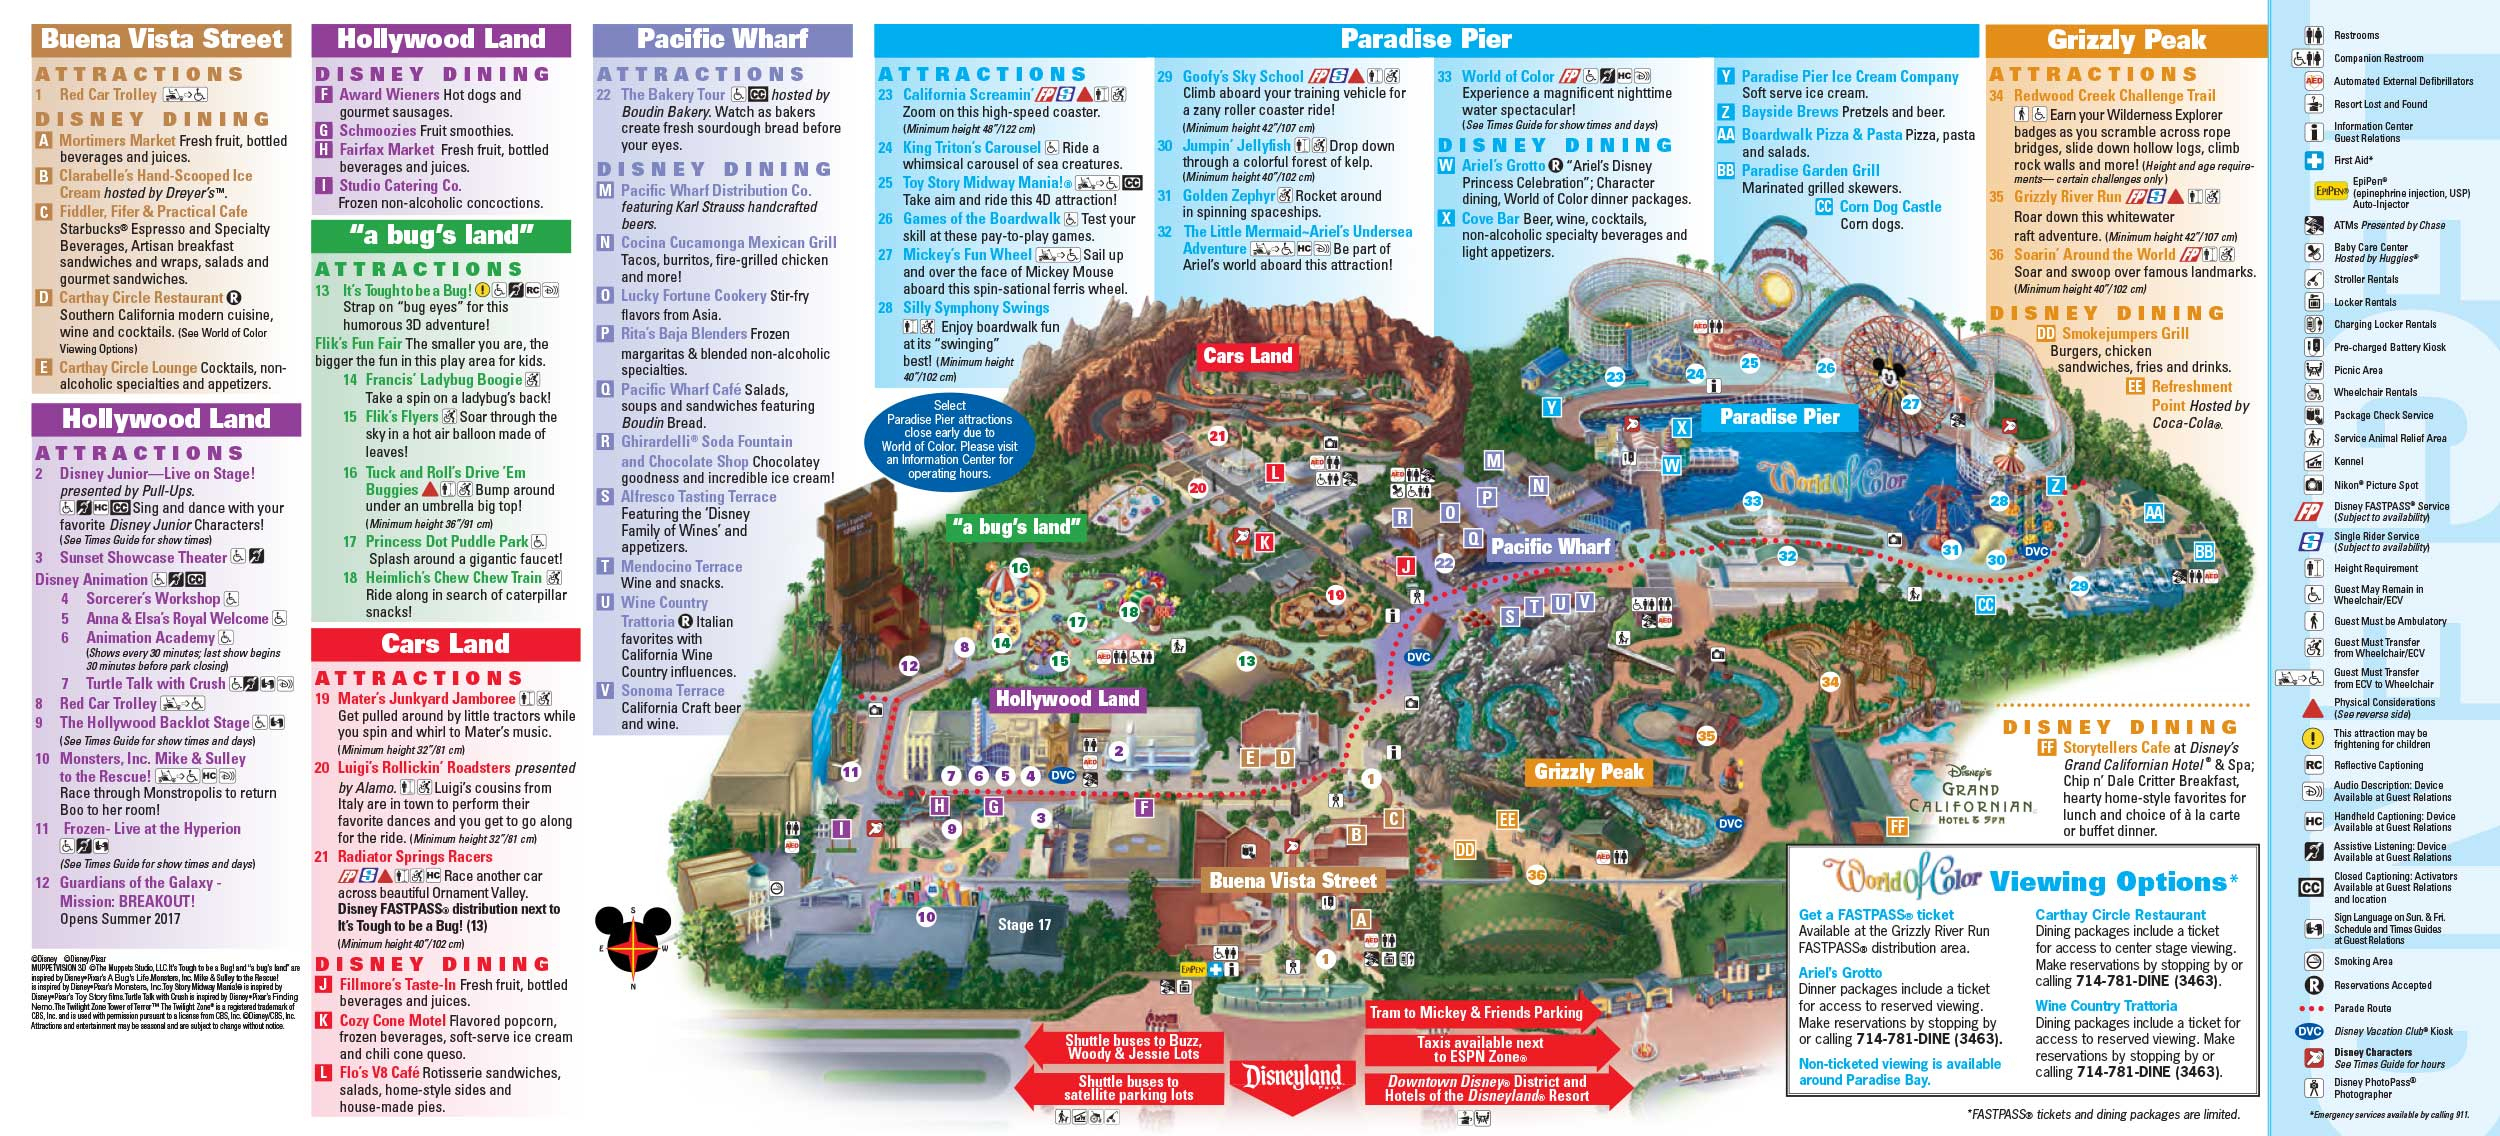 Disneyland Park Map In California, Map Of Disneyland - California Adventure Map 2017 Pdf